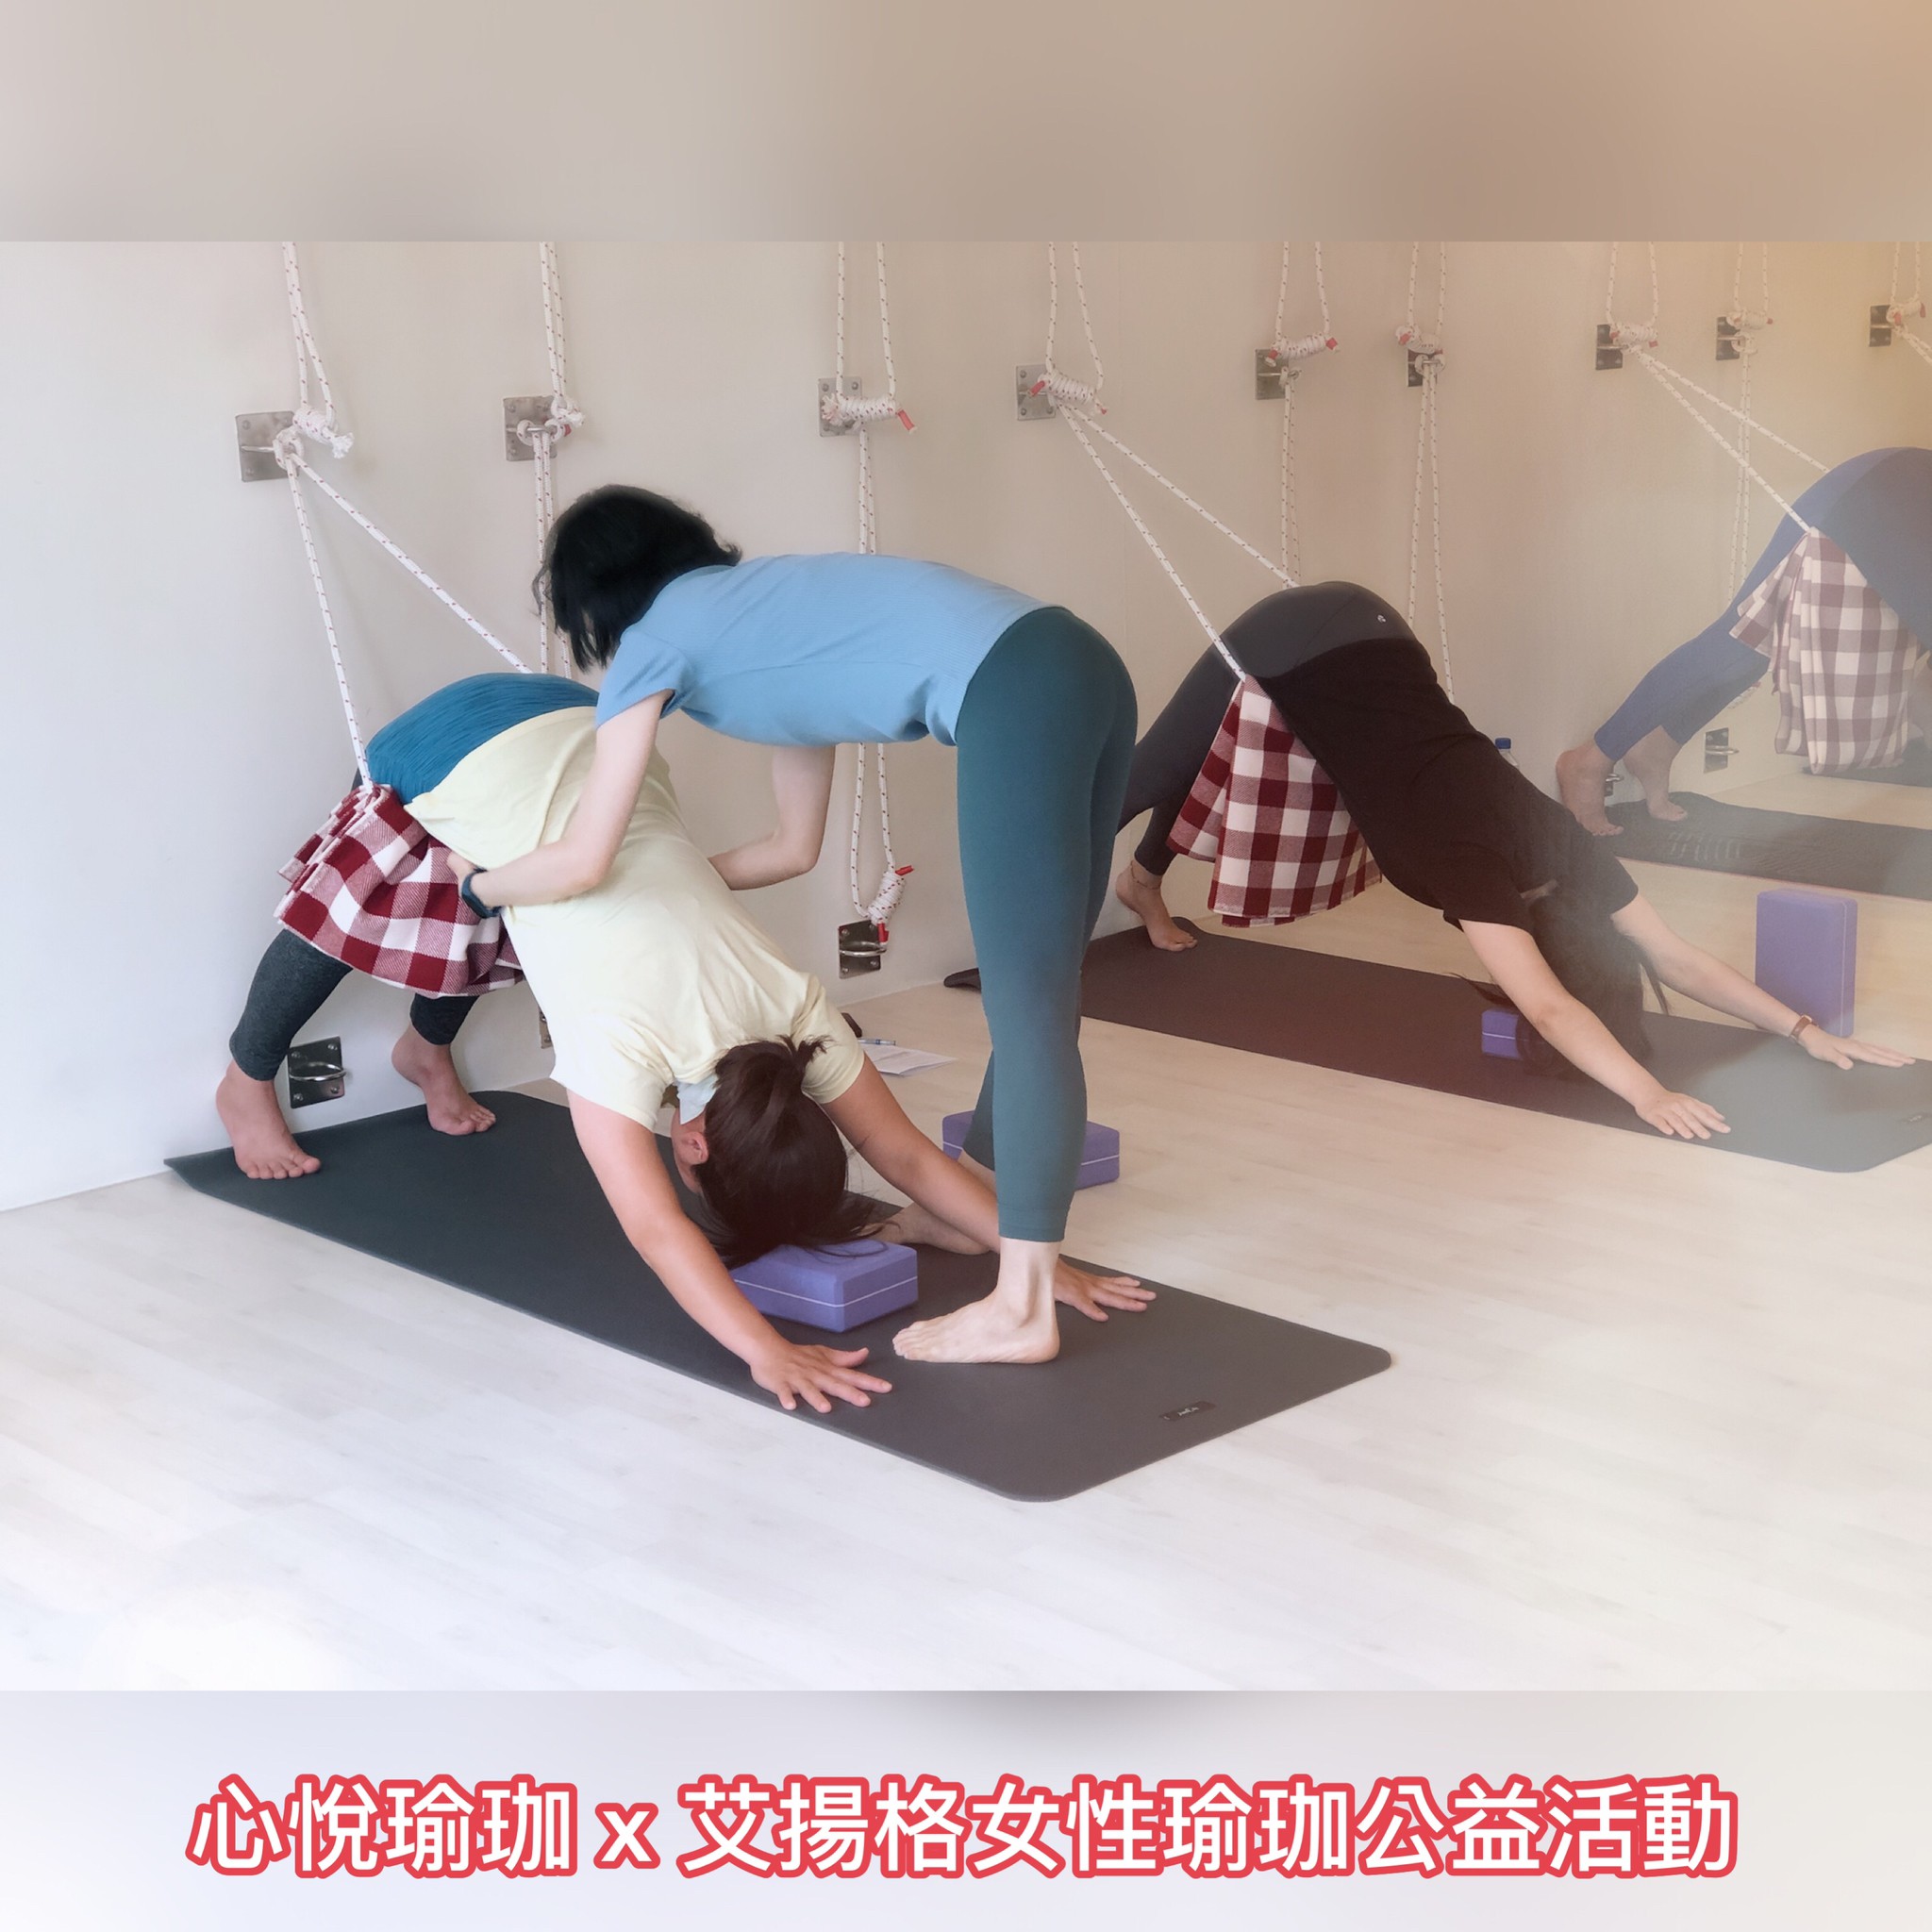 艾揚格女性瑜珈公益活動大成功!